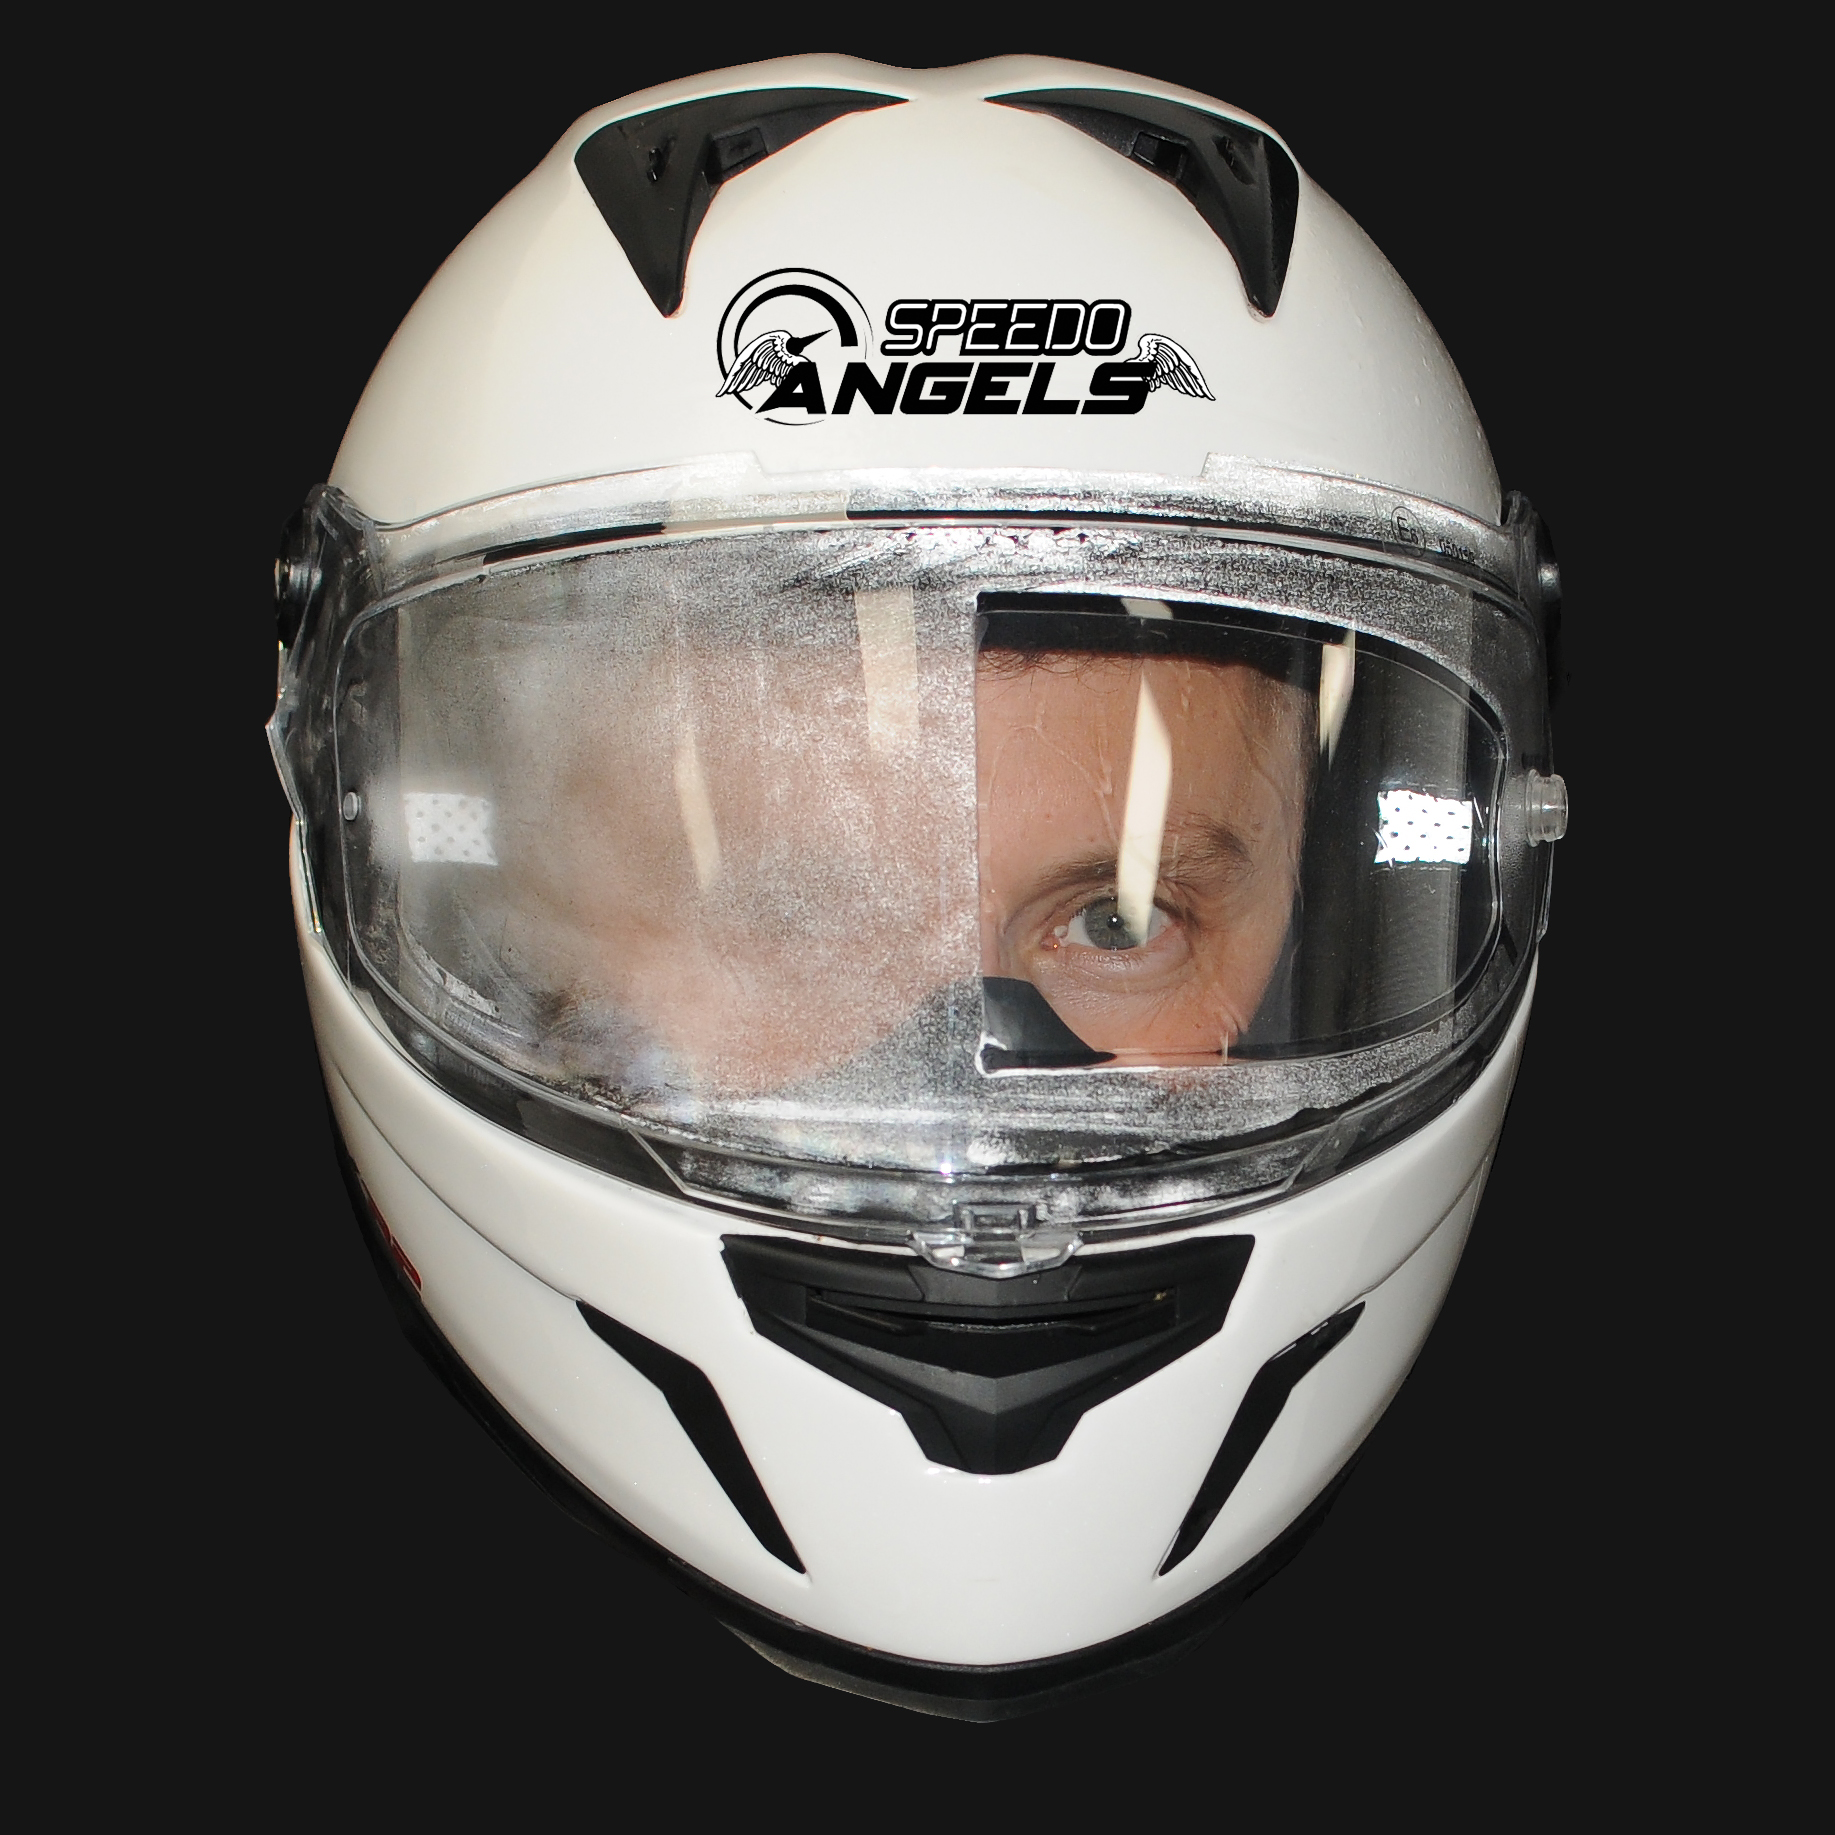 Speedo Angels Universal Anti Fog Helmet Visor Insert - Lens Mist Film | eBay